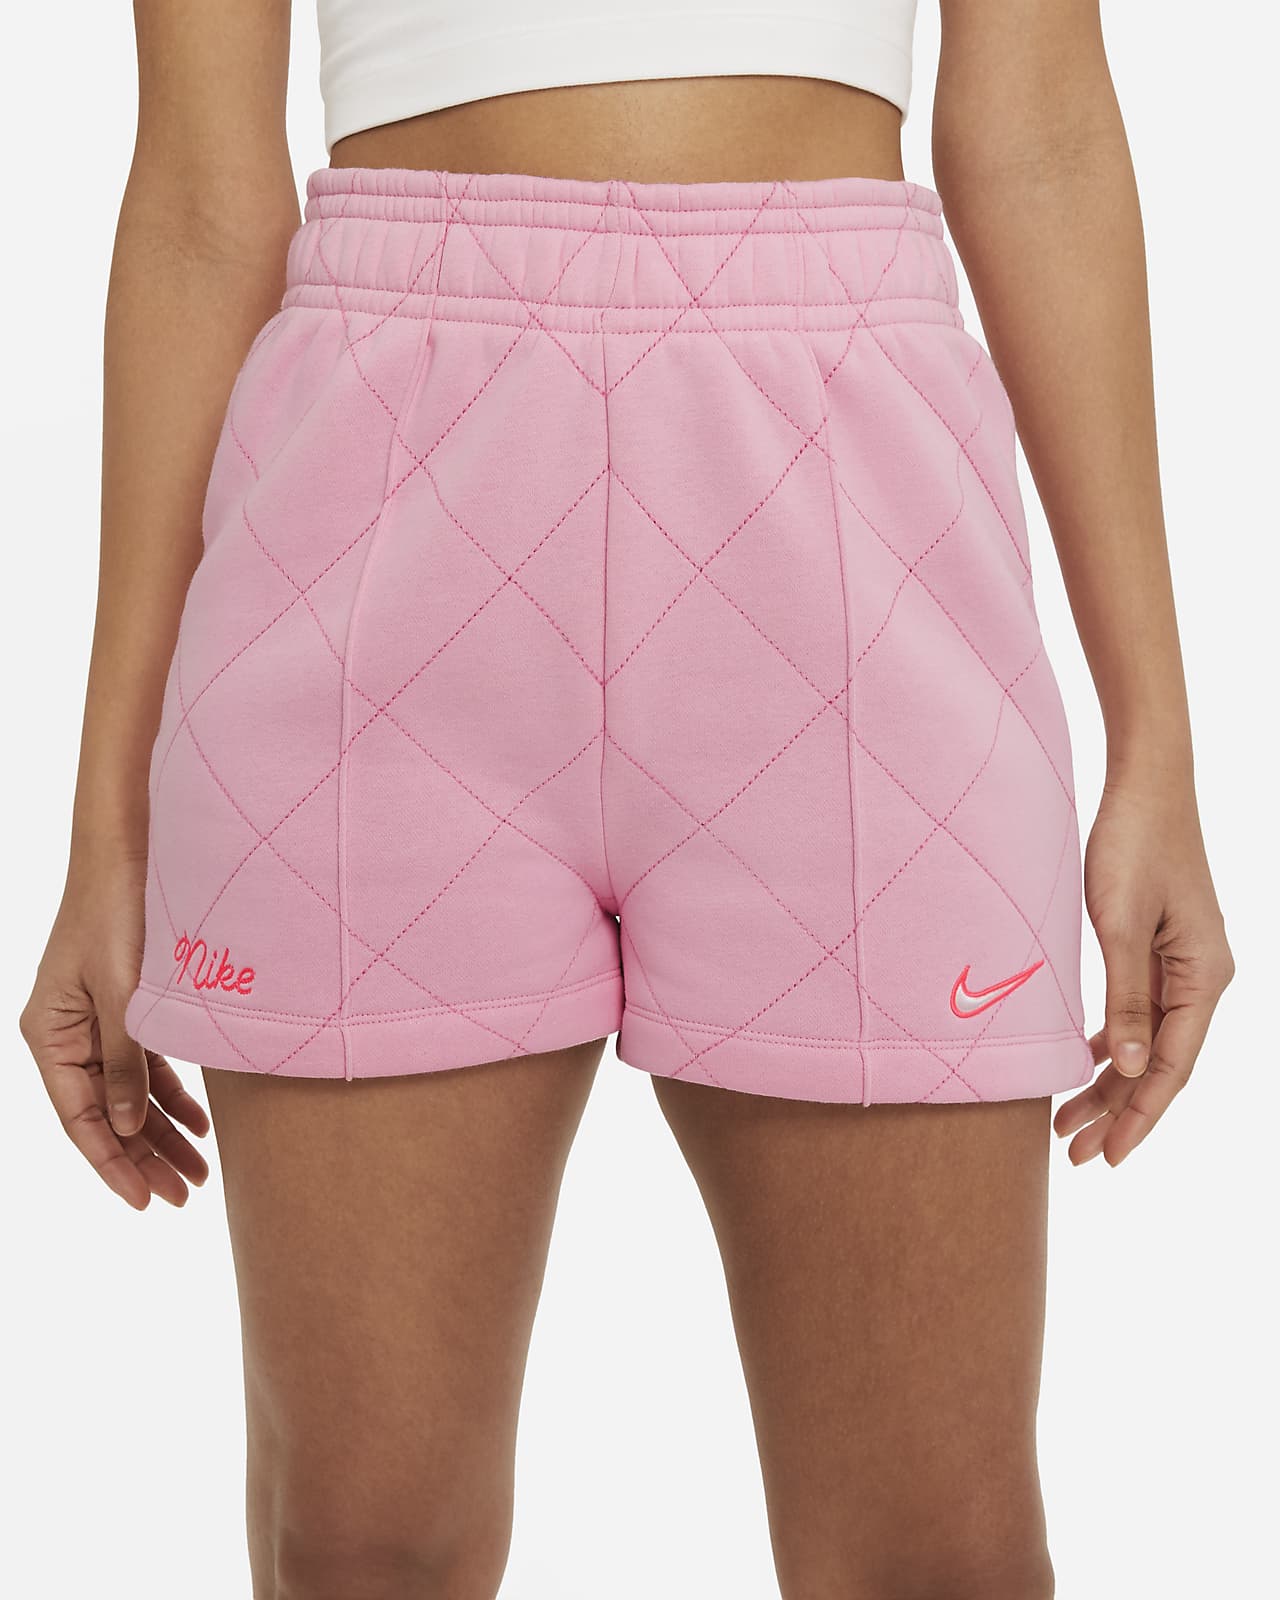 nike fleece shorts for women